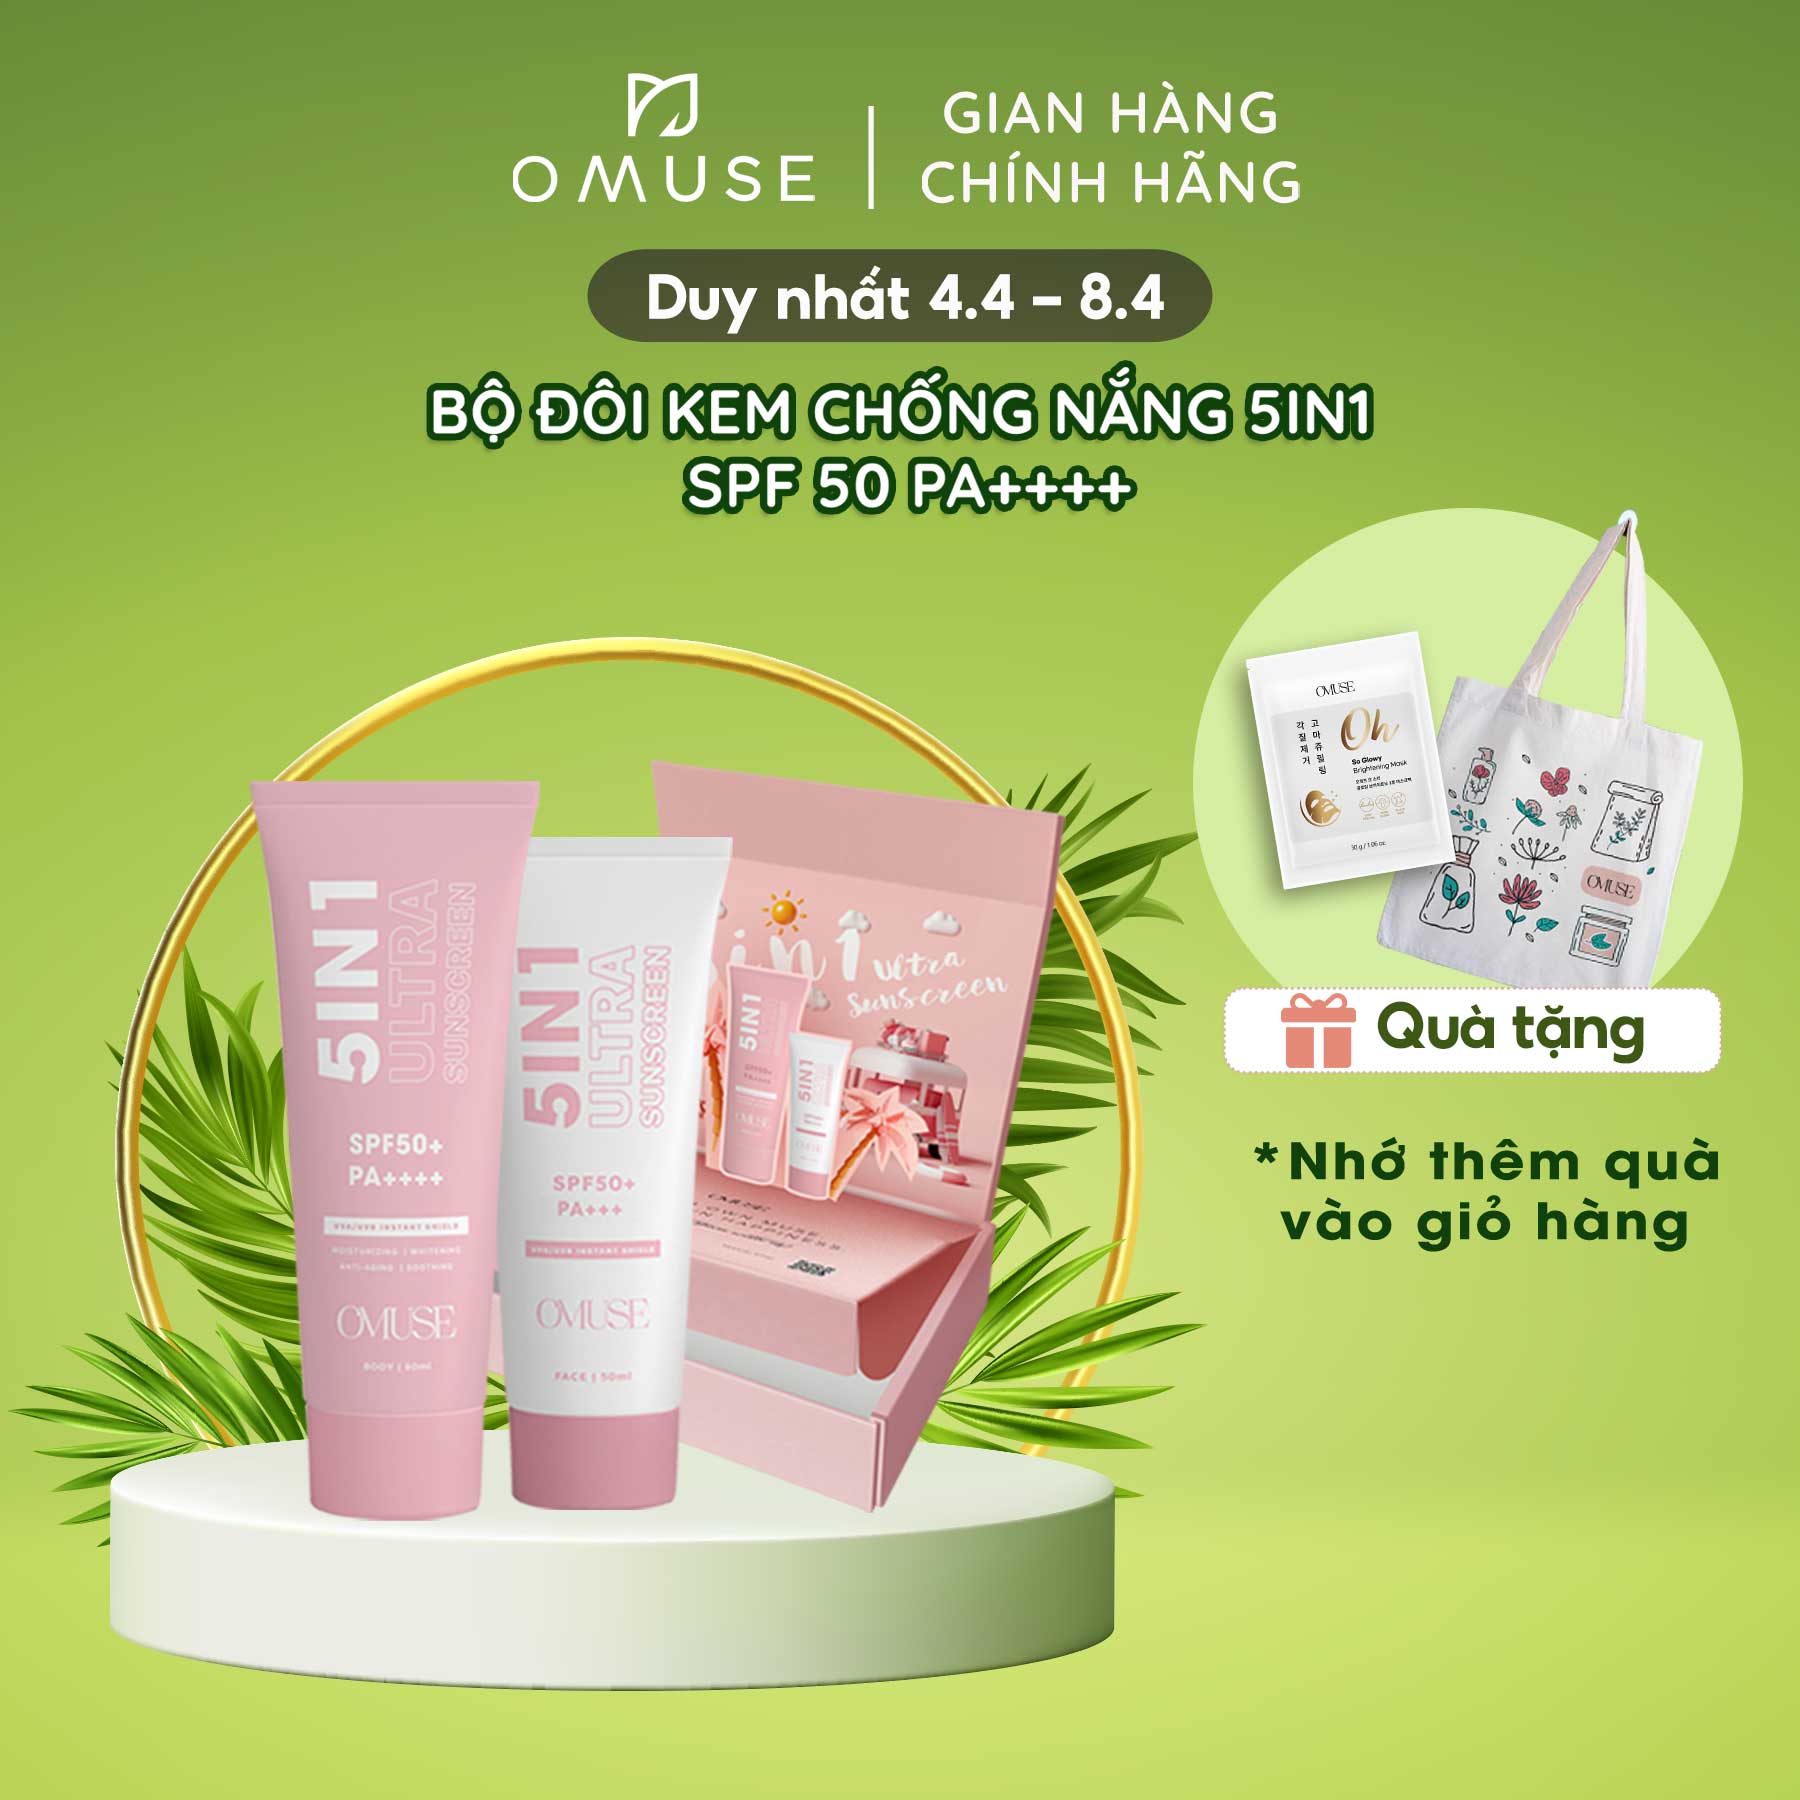 Bộ Kem chống nắng cho da mặt và kem chống nắng body O Muse Ultra Sunscreen 5IN1 SPF 50 PA++++ thumbnail